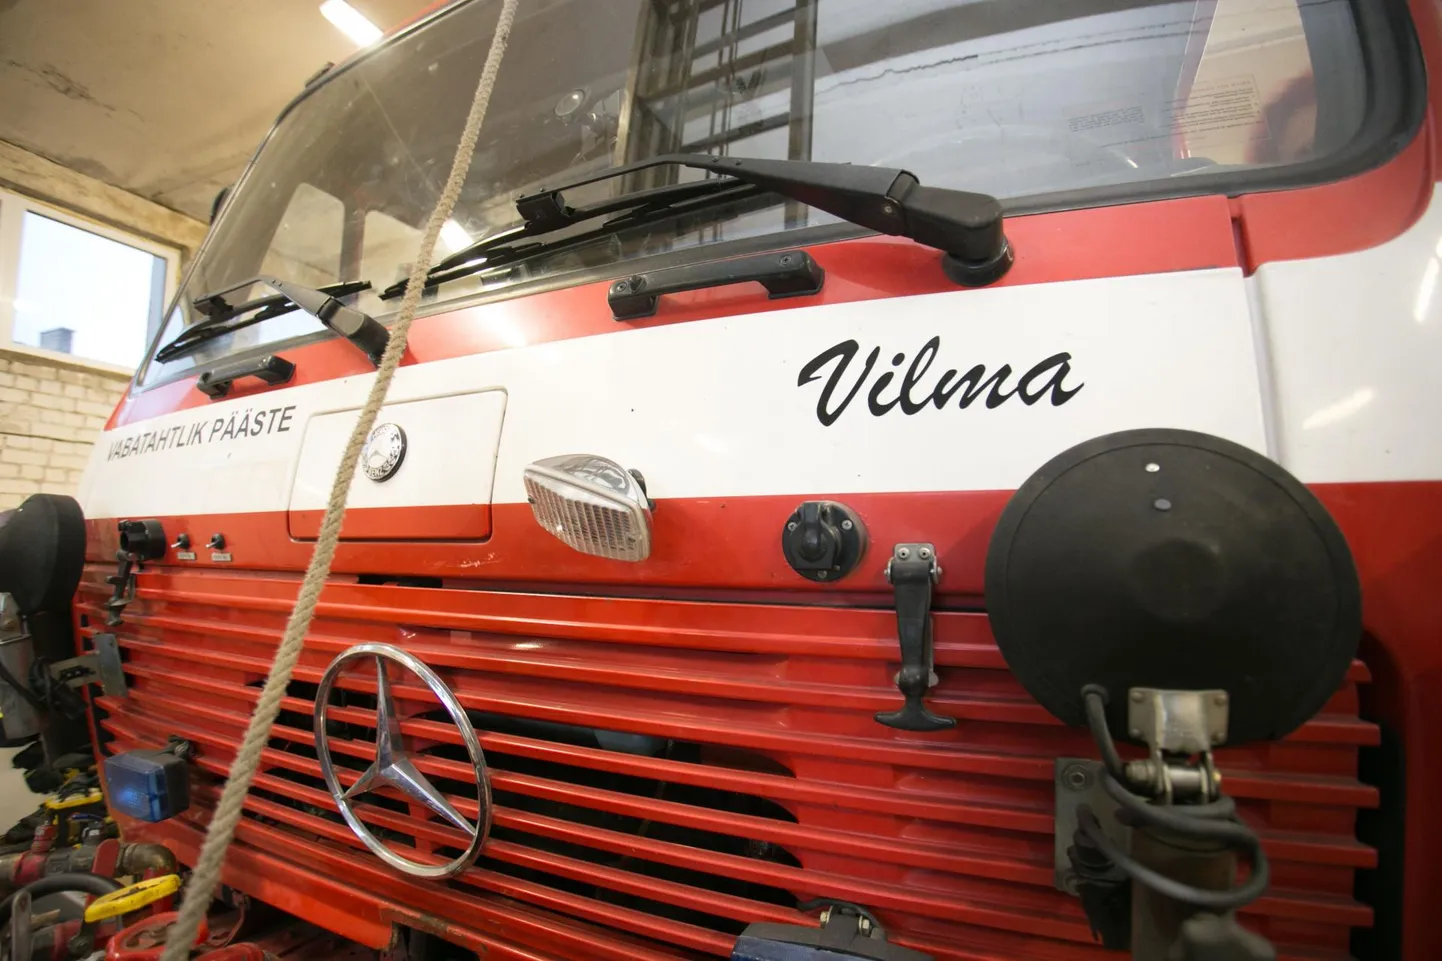 Aasukalda priitahtliku päästekomando senine päästeauto Vilma sai omale kaaslaseks Mörru-Vilve.